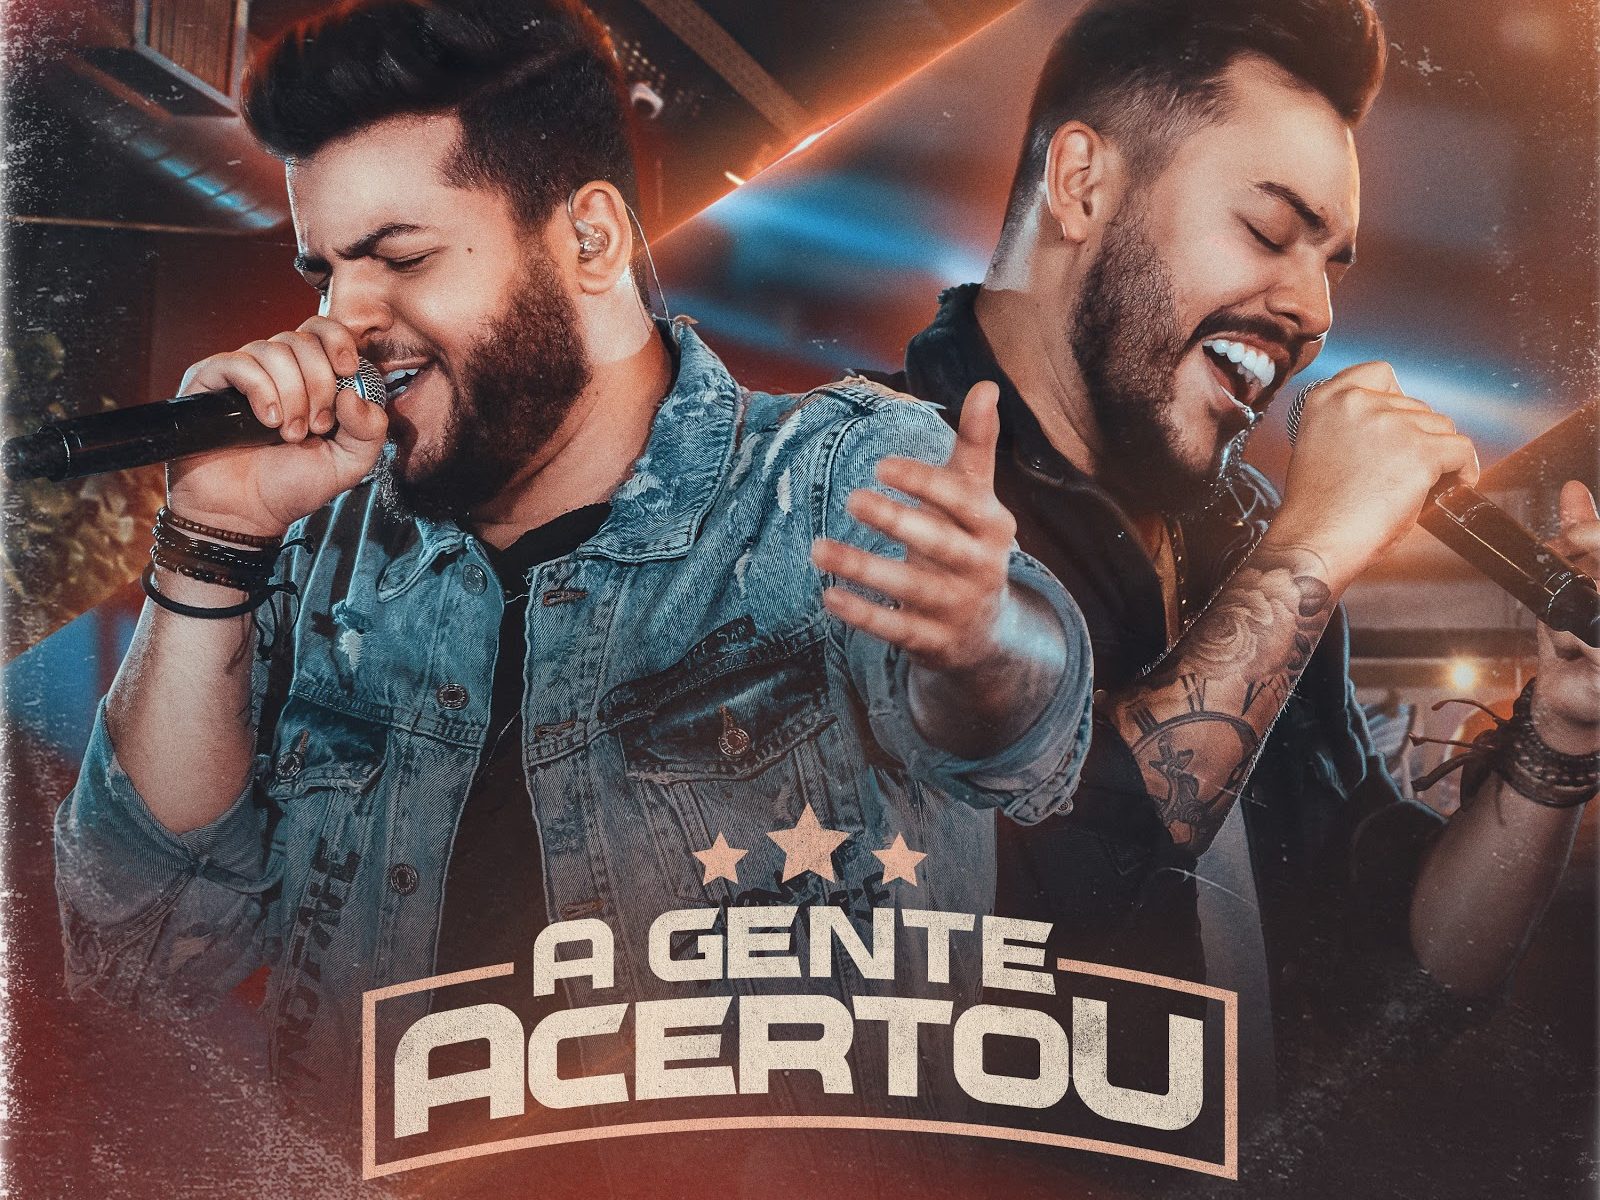 Dupla Ícaro e Gilmar lança o seu quarto DVD "A Gente Acertou" com repertório inédito 41